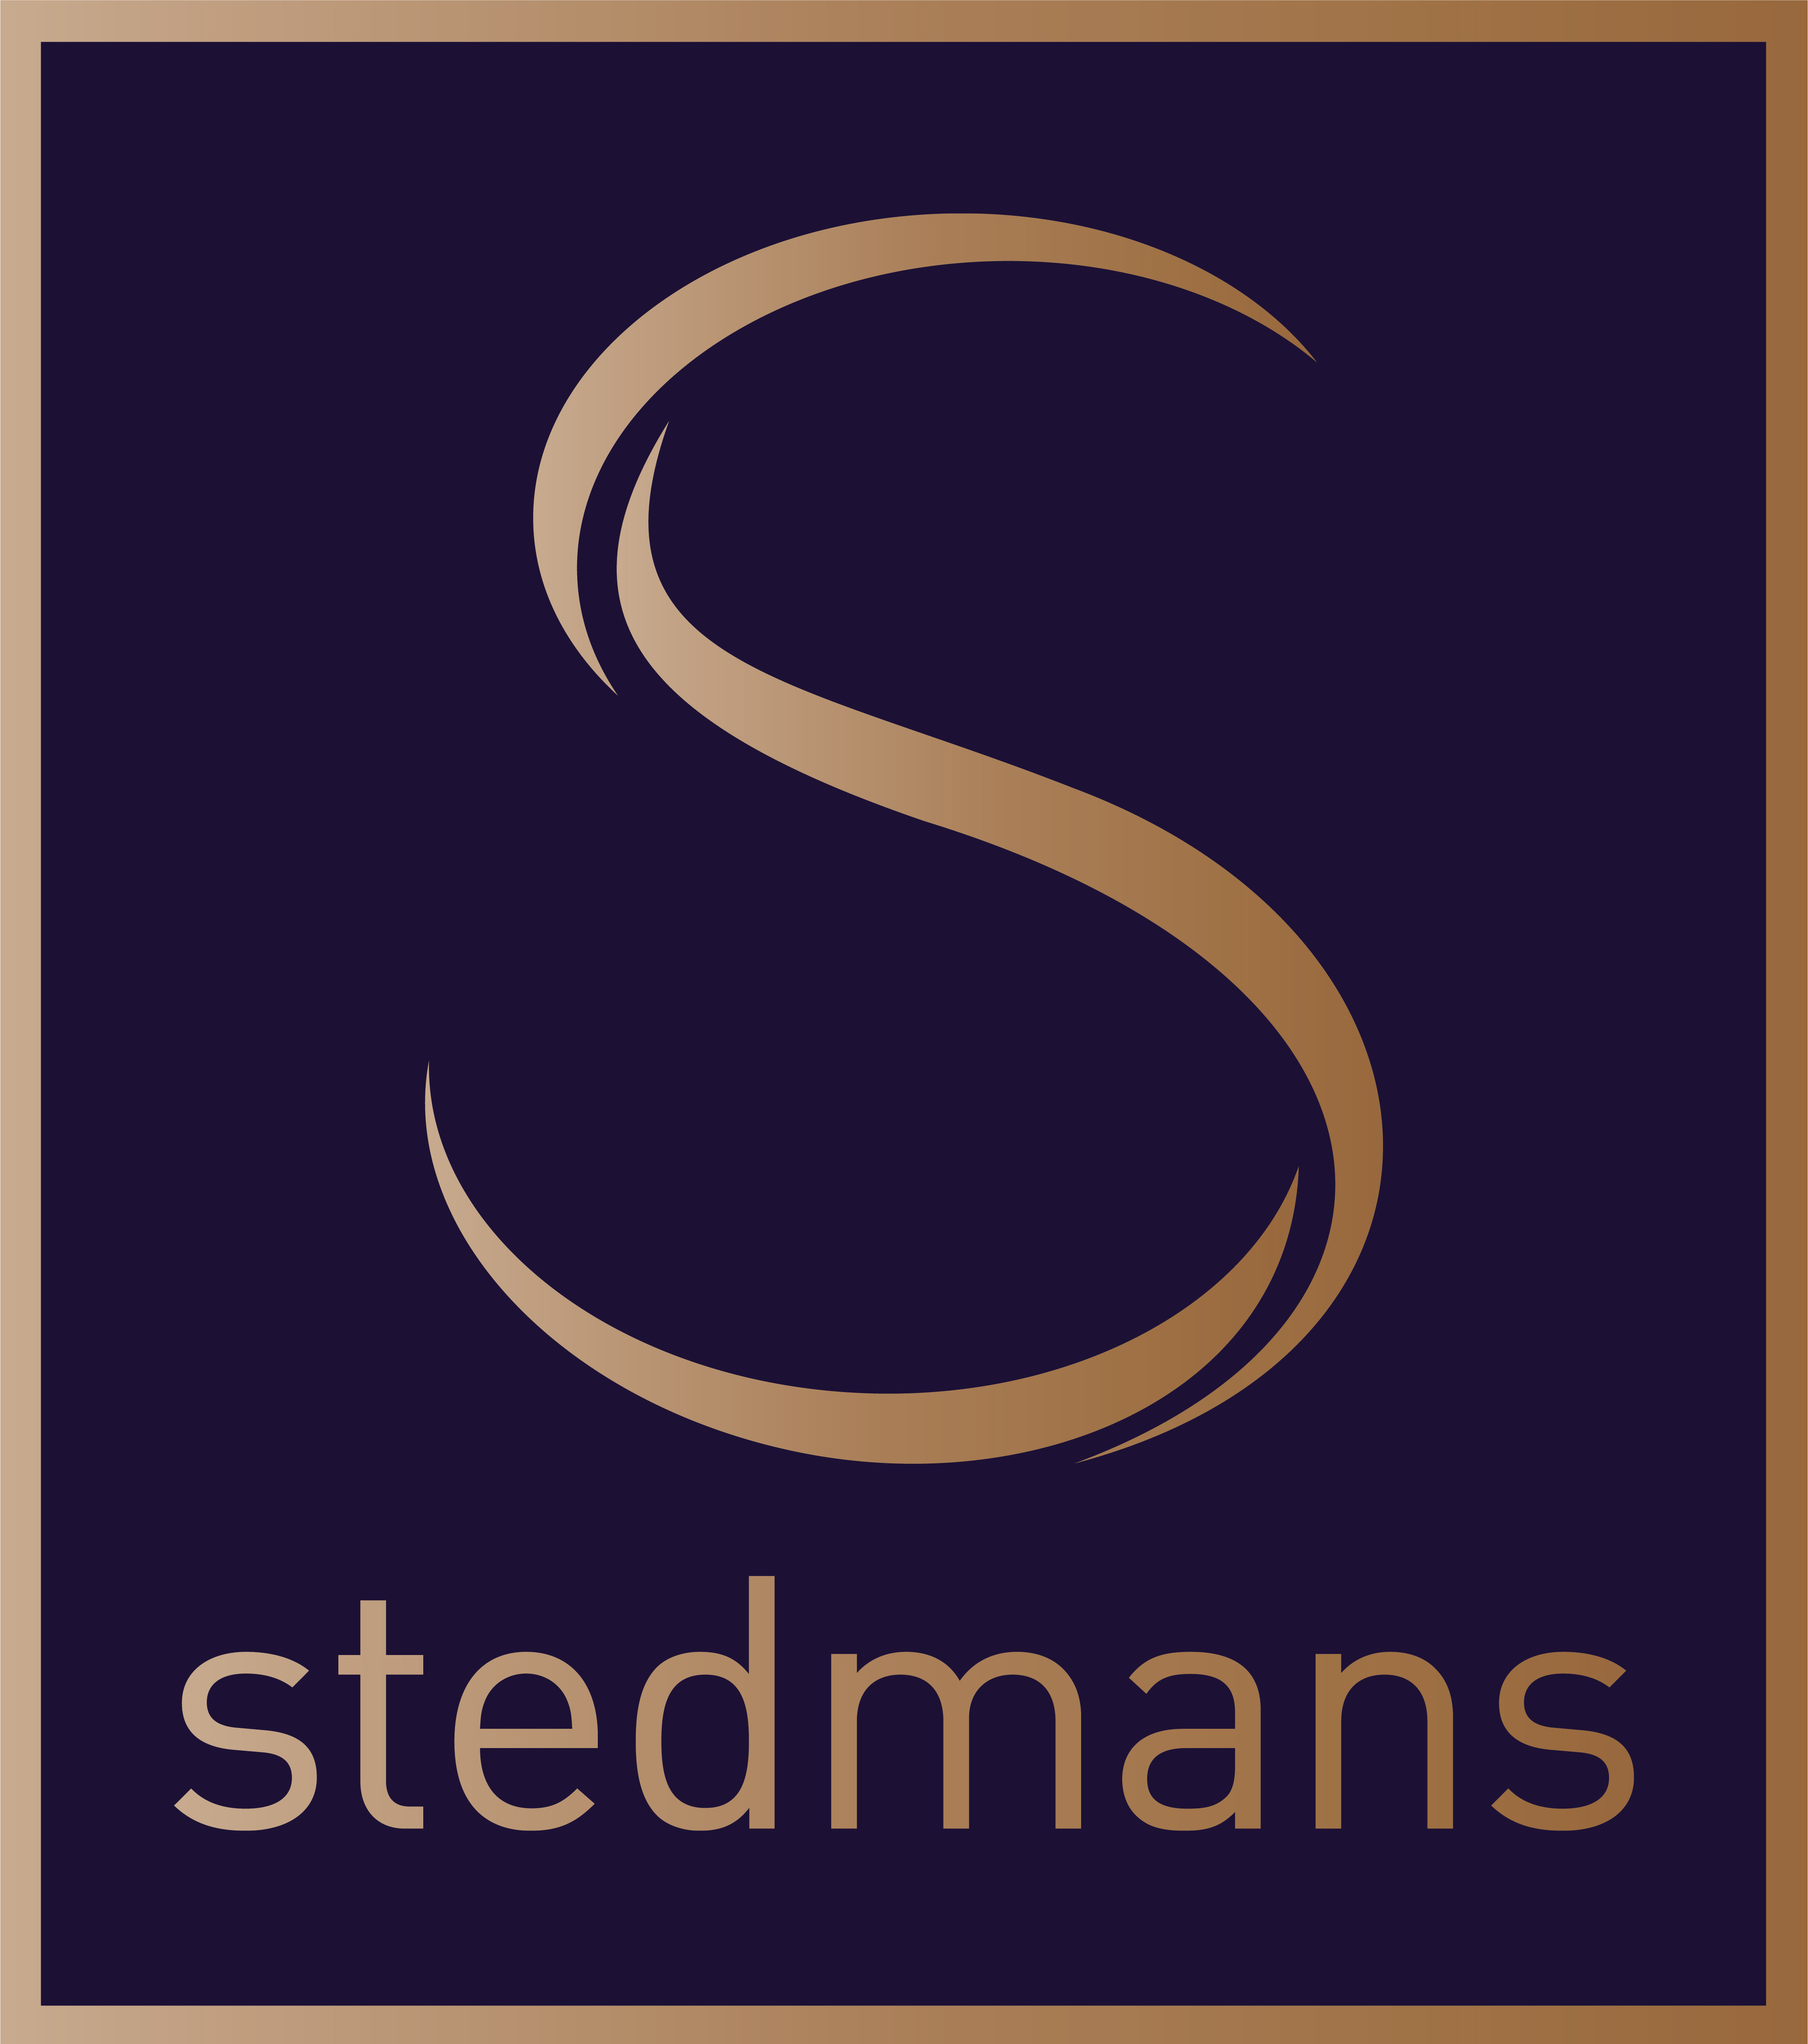 Stedmans Hospitality